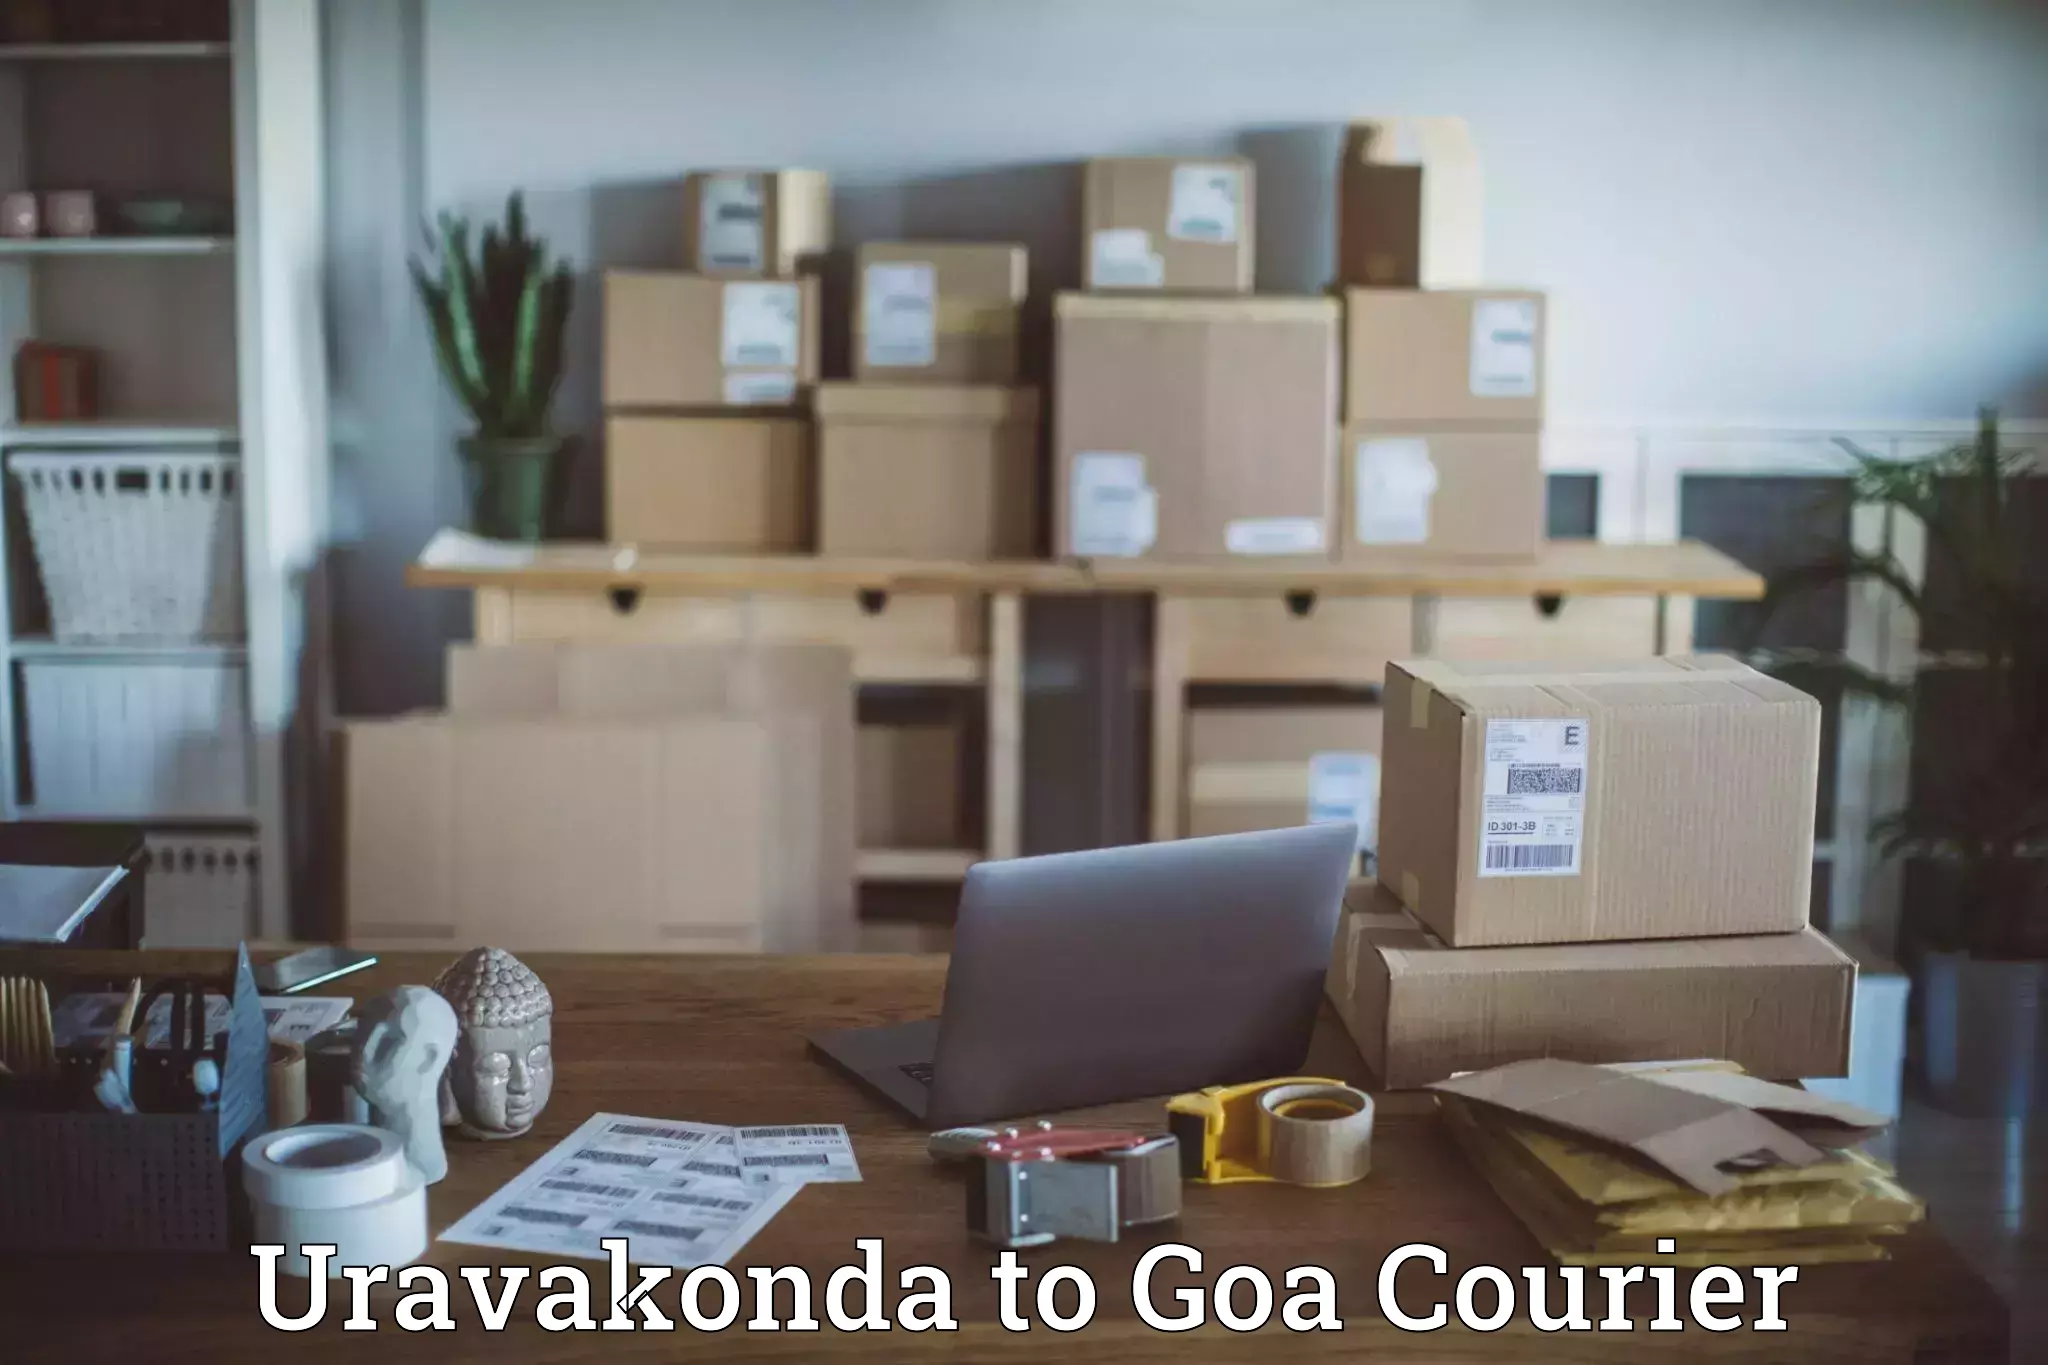 Cash on delivery service Uravakonda to NIT Goa